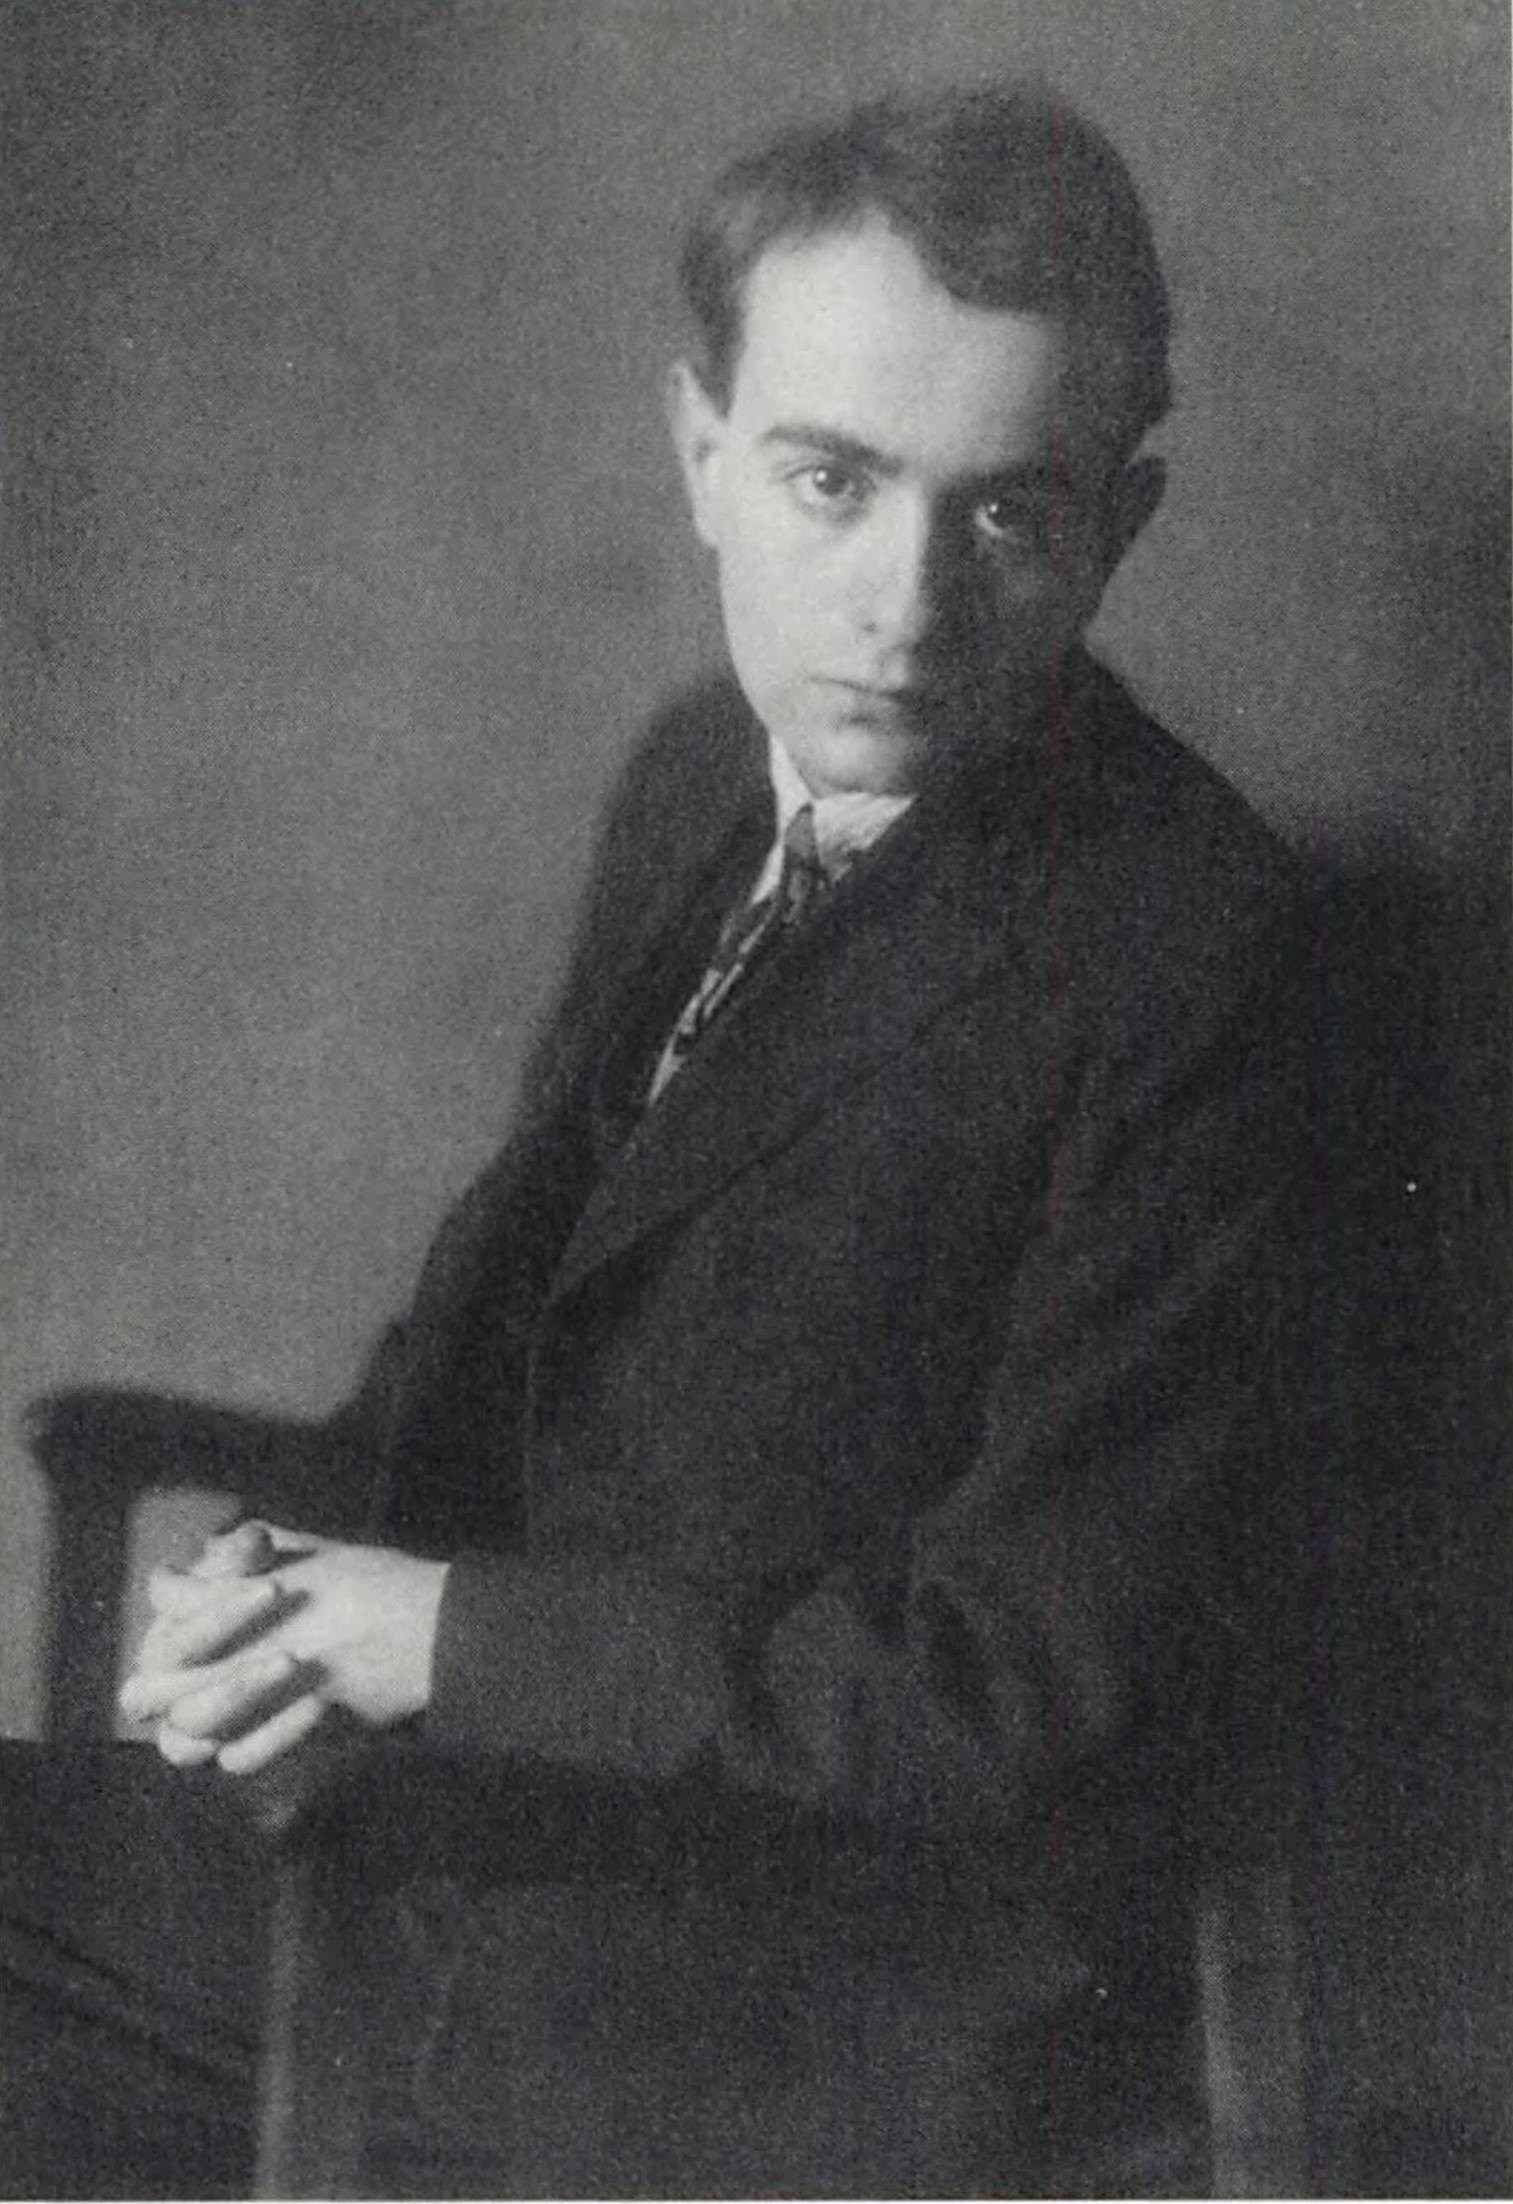 Theodor Adorno in 1925 | The Charnel-House